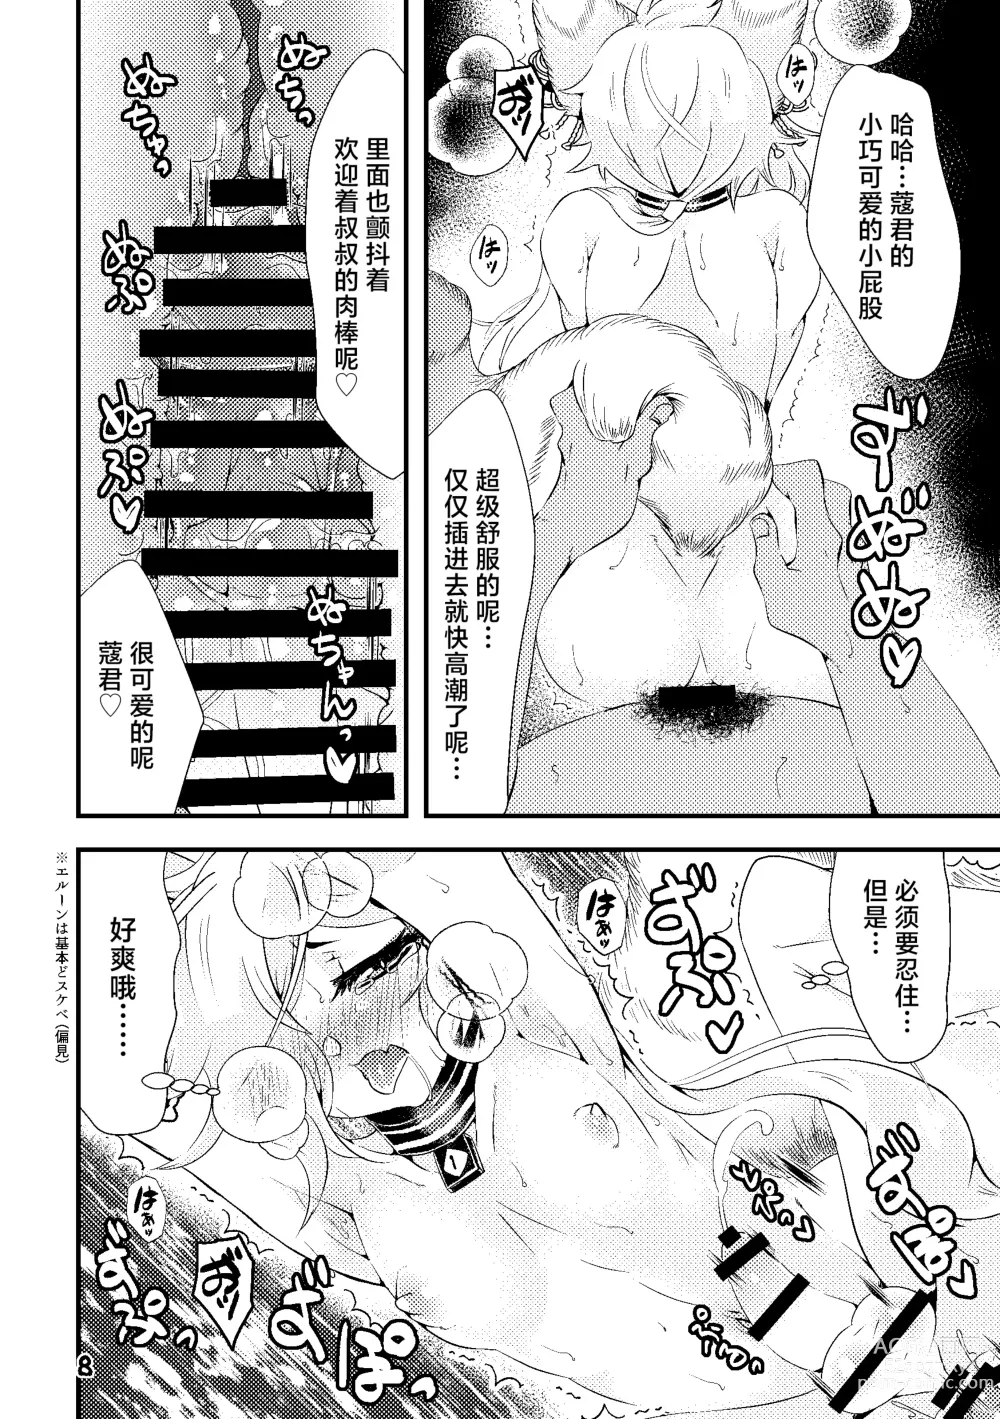 Page 8 of doujinshi Kou-kun to Mitsugetsu